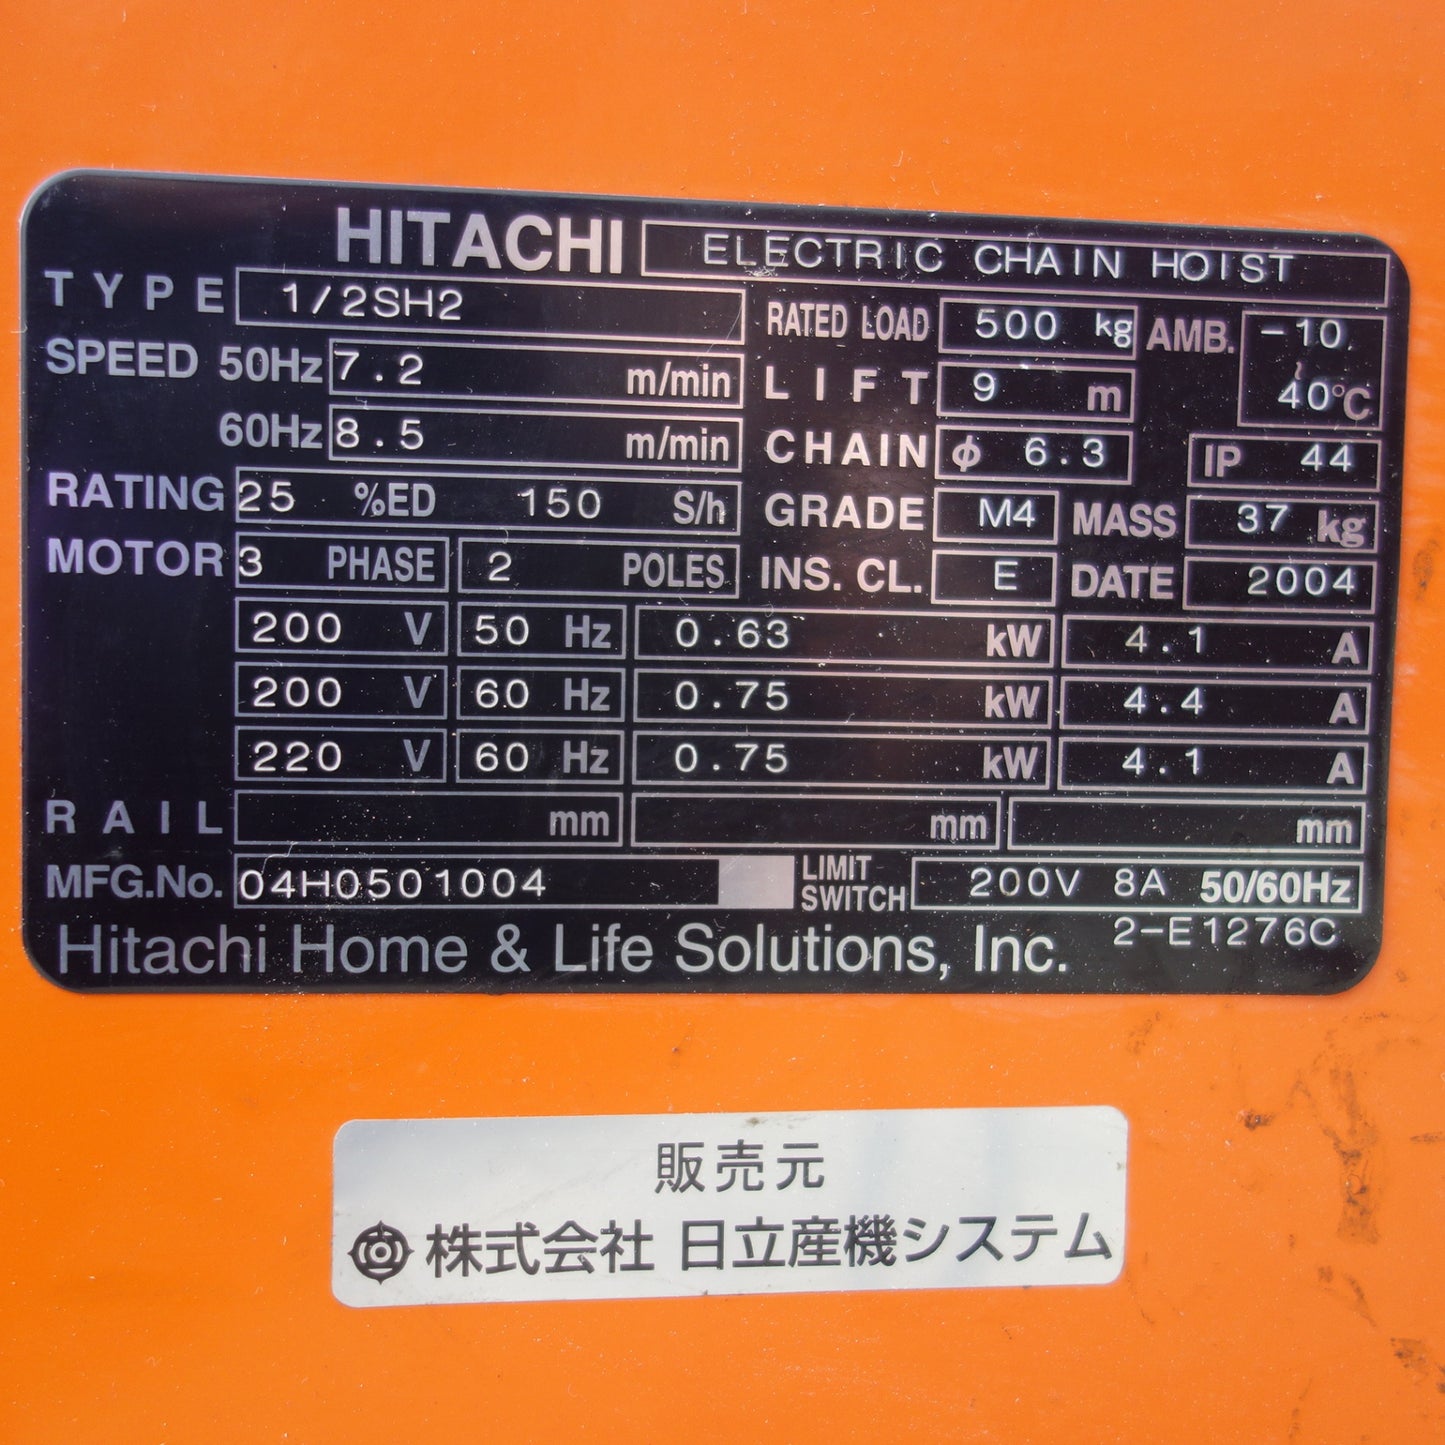 [送料無料] ◆HITACHI 日立産機 チェーンホイスト 1/2SH2 電動チェーンブロック LIFT9m 500kg 200V◆